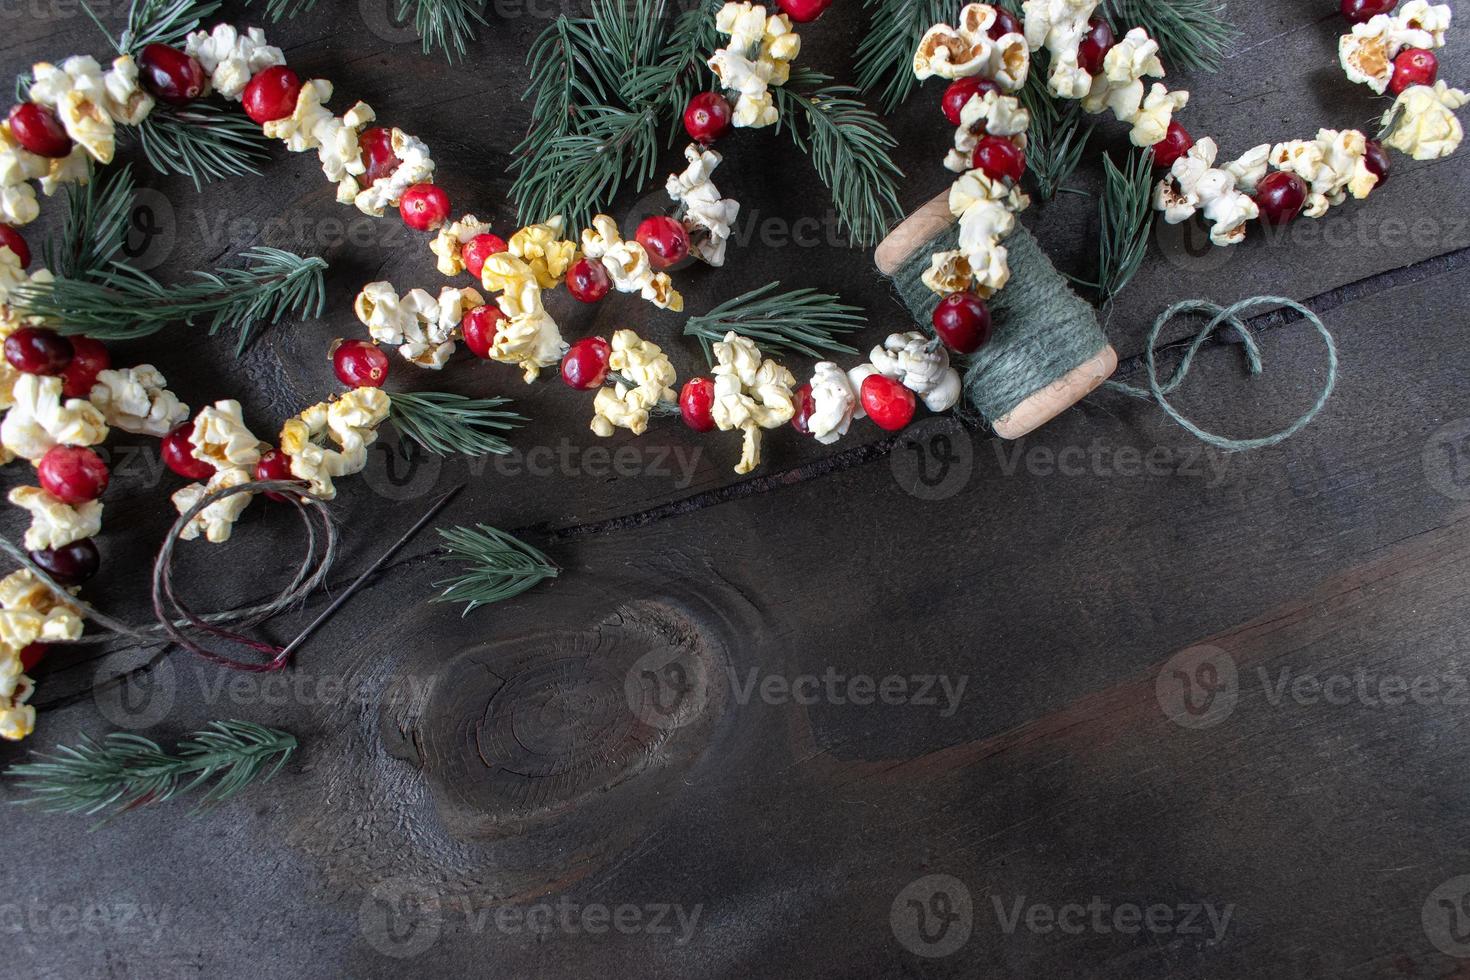 kerstslinger van rode veenbessen en popcornpitten met kopieerruimte foto